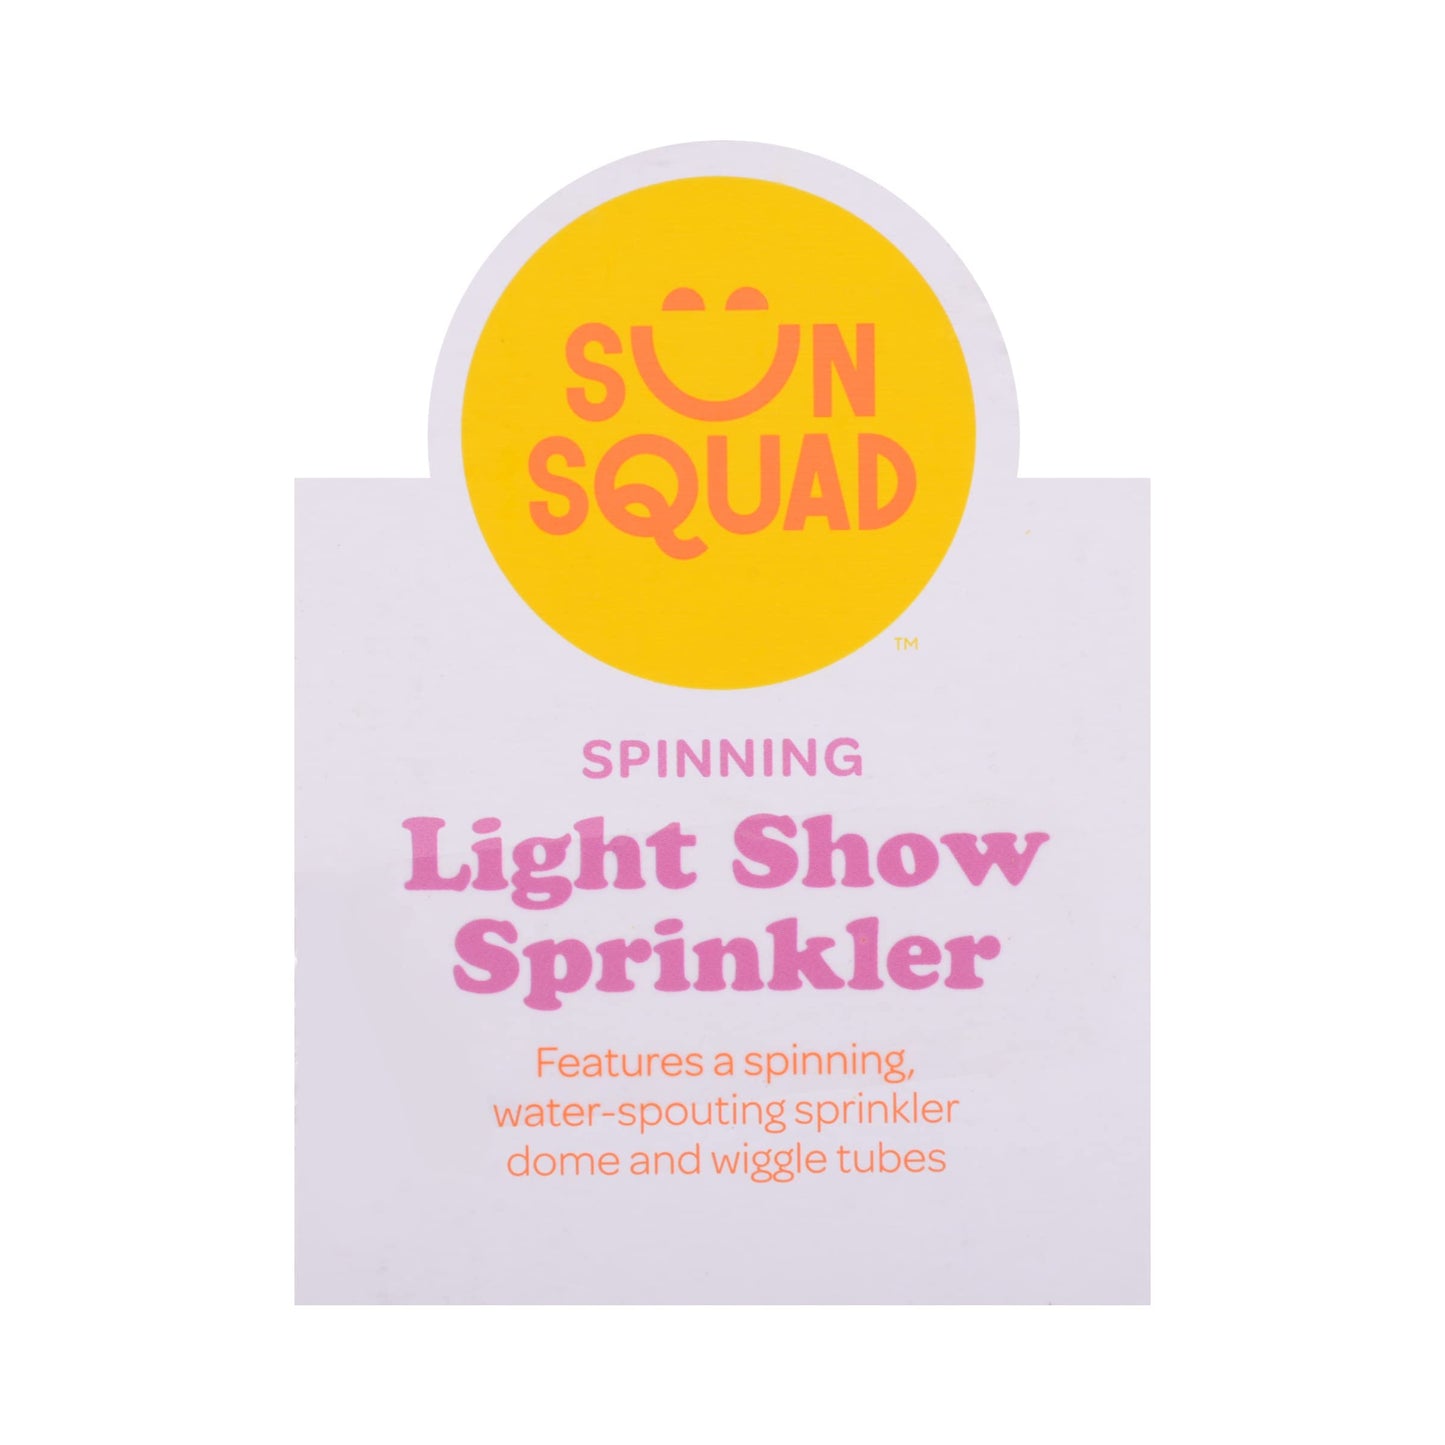 Sun Squad Spinning Light Show Sprinkler